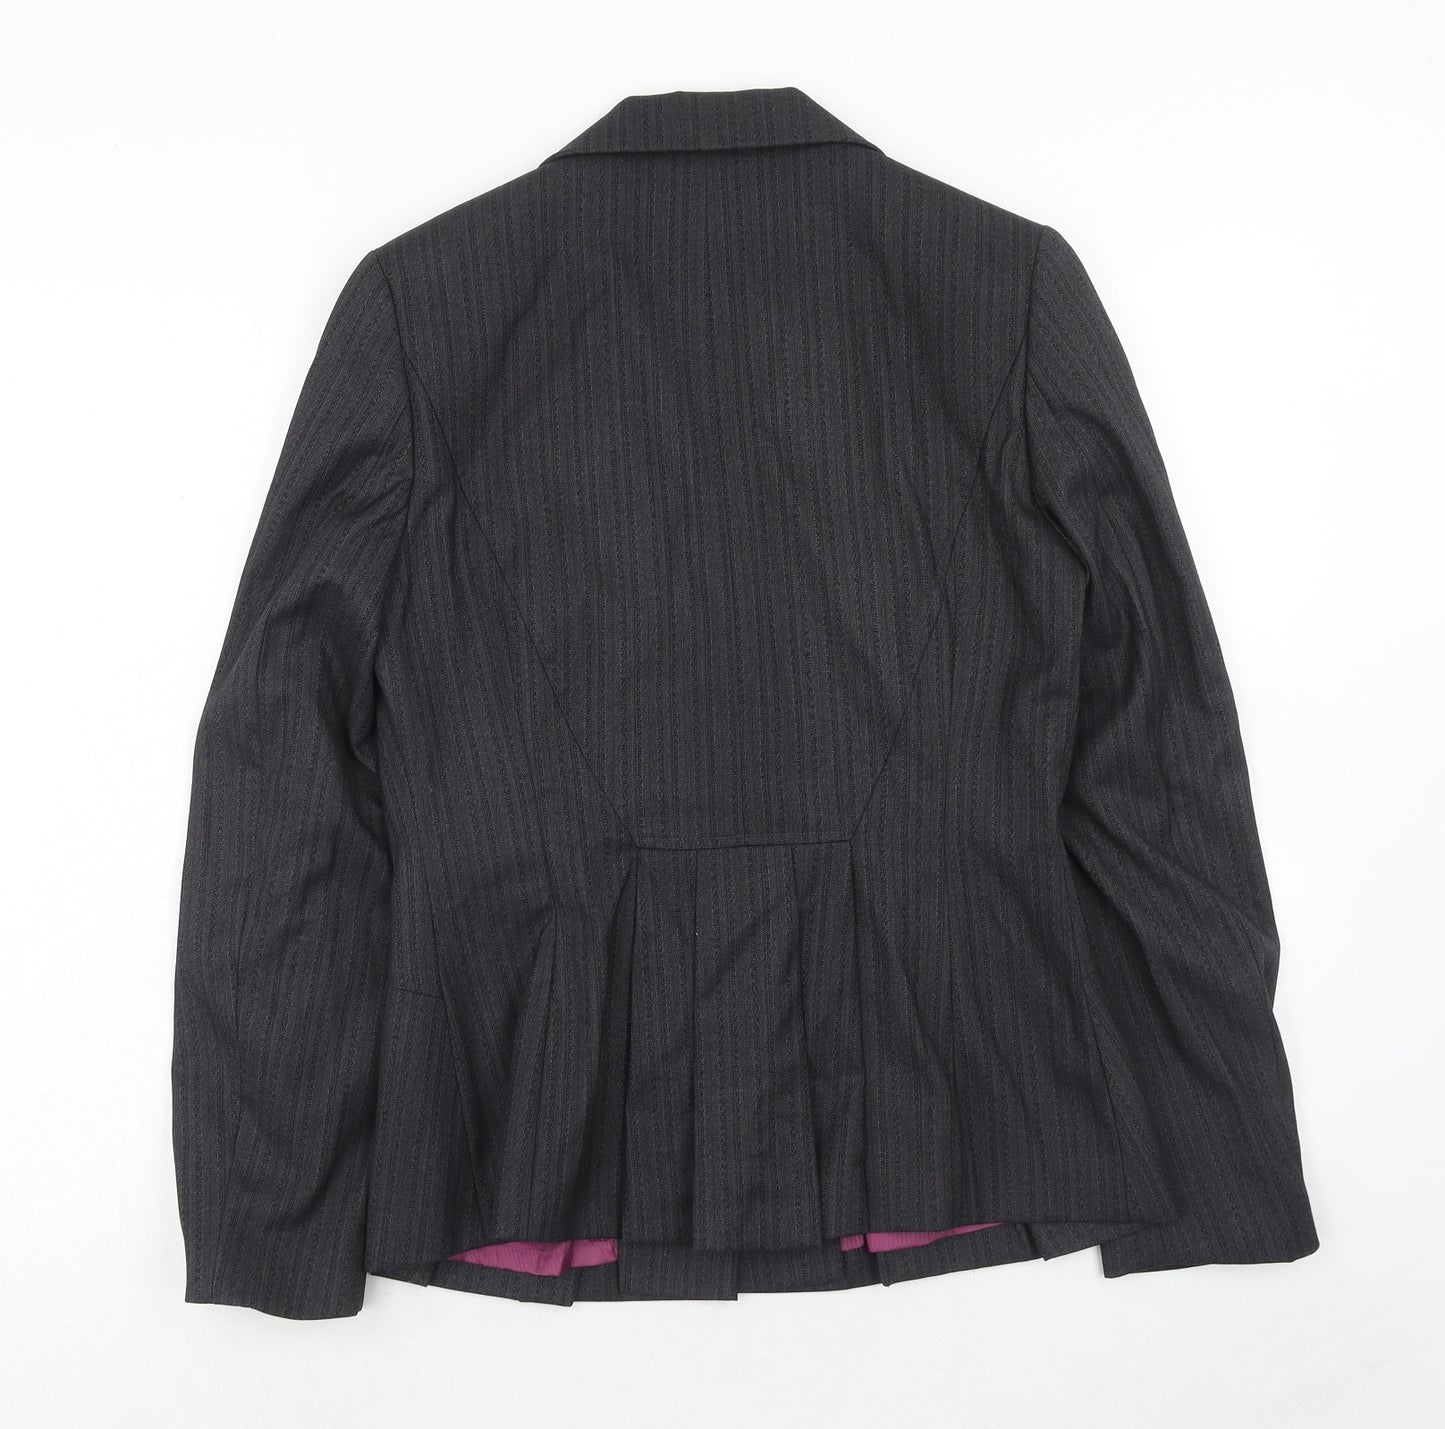 NEXT Womens Grey Polyester Jacket Blazer Size 12